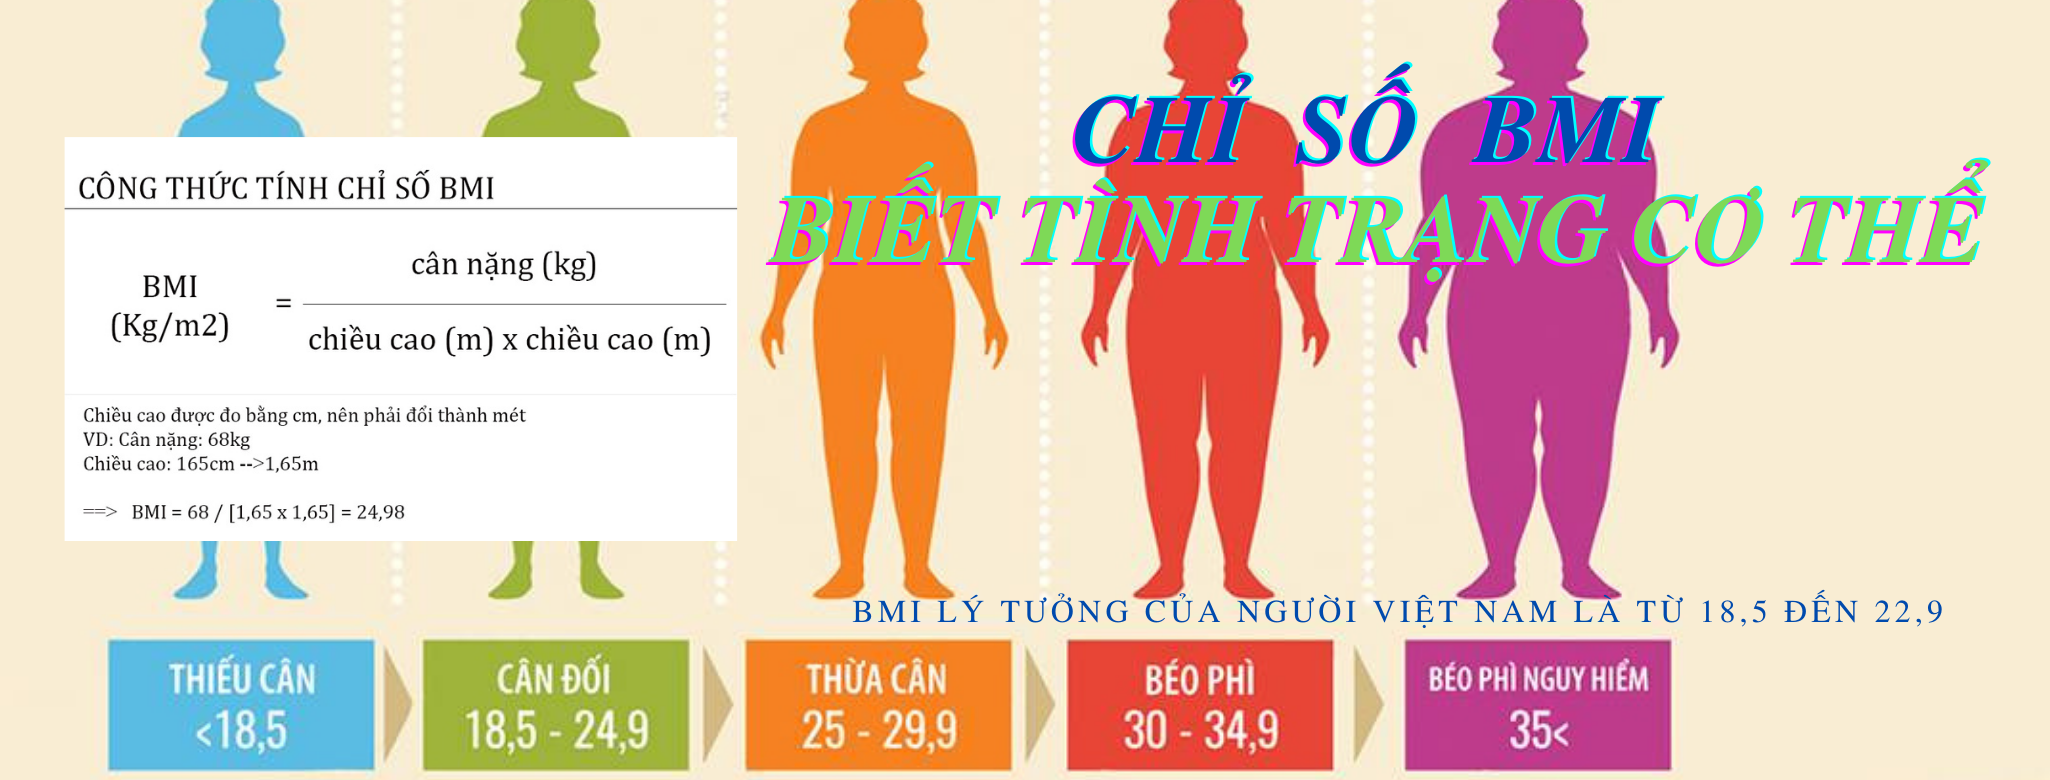 Chỉ số BMI do lường mức độ thừa cân, béo phì